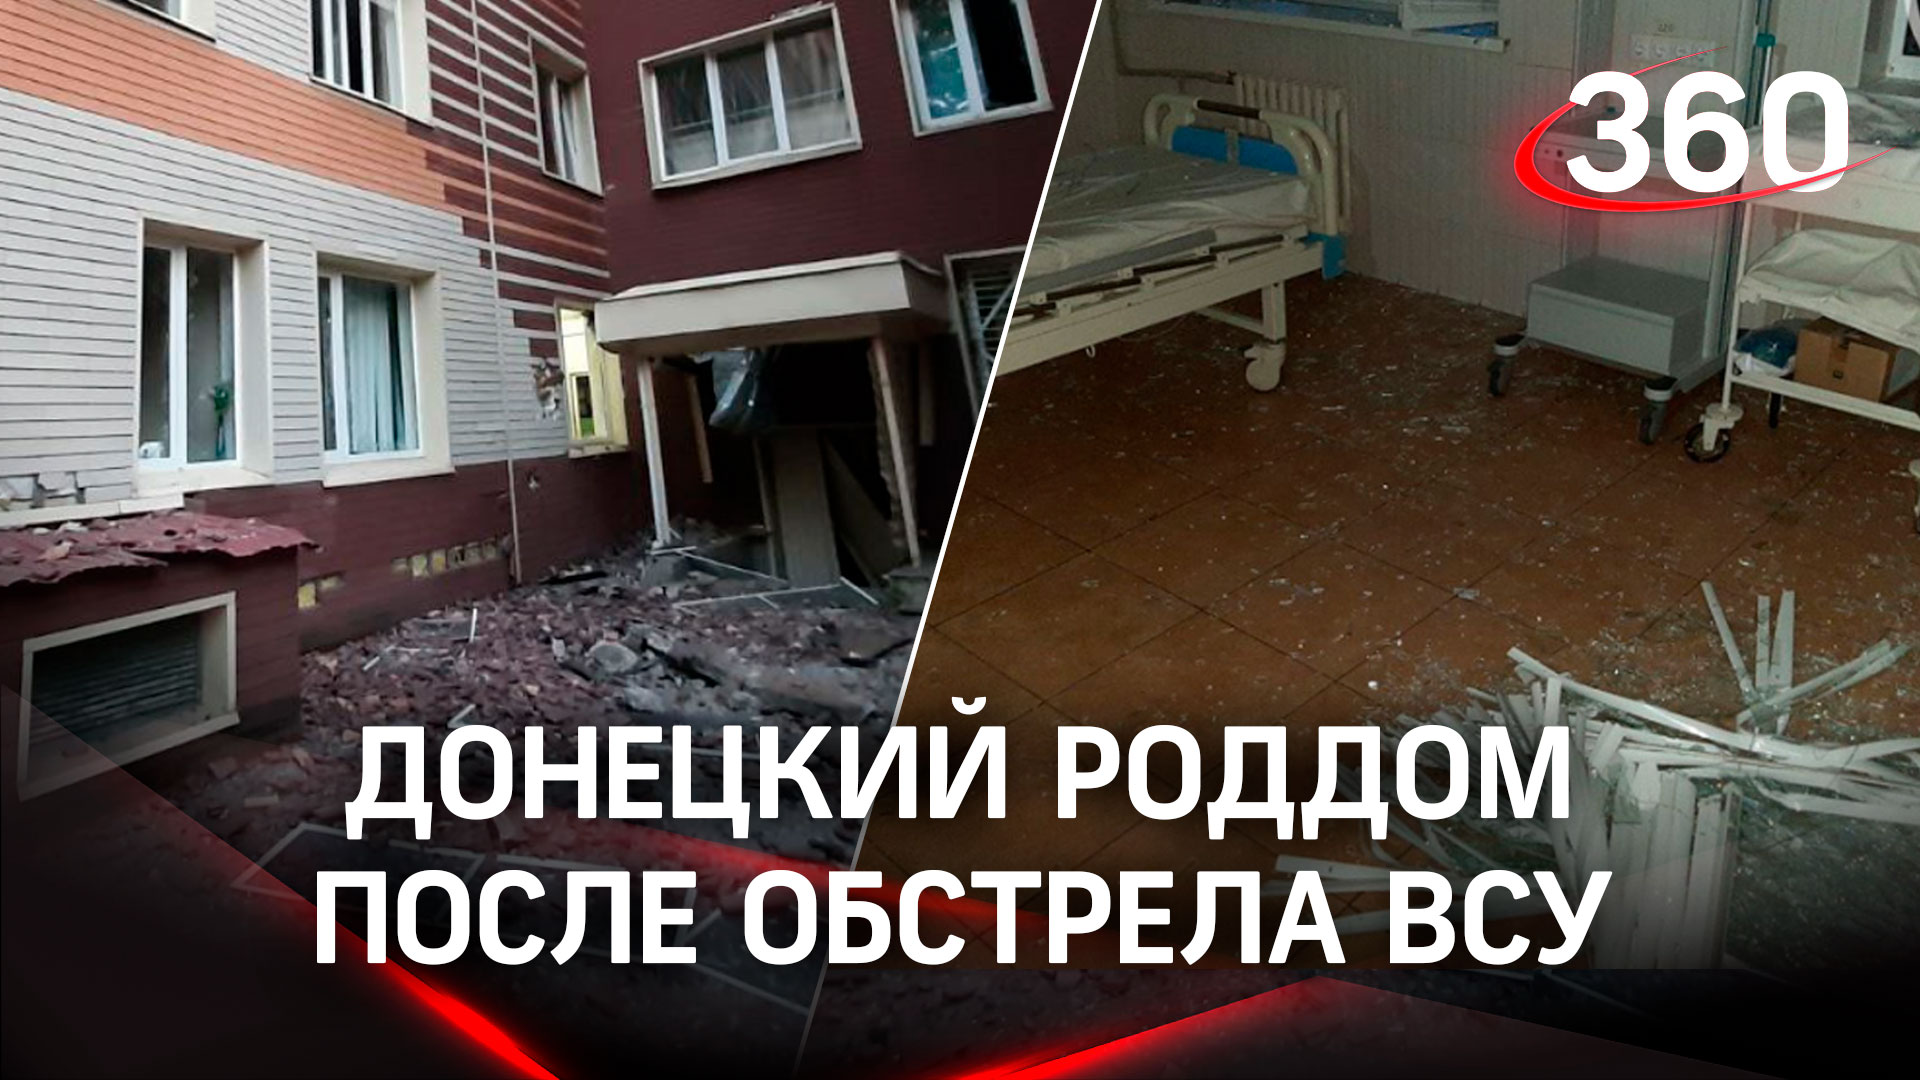 Разрушенный роддом, рынок в огне, пятеро погибших - ВСУ выпустили по Донецку 300 снарядов